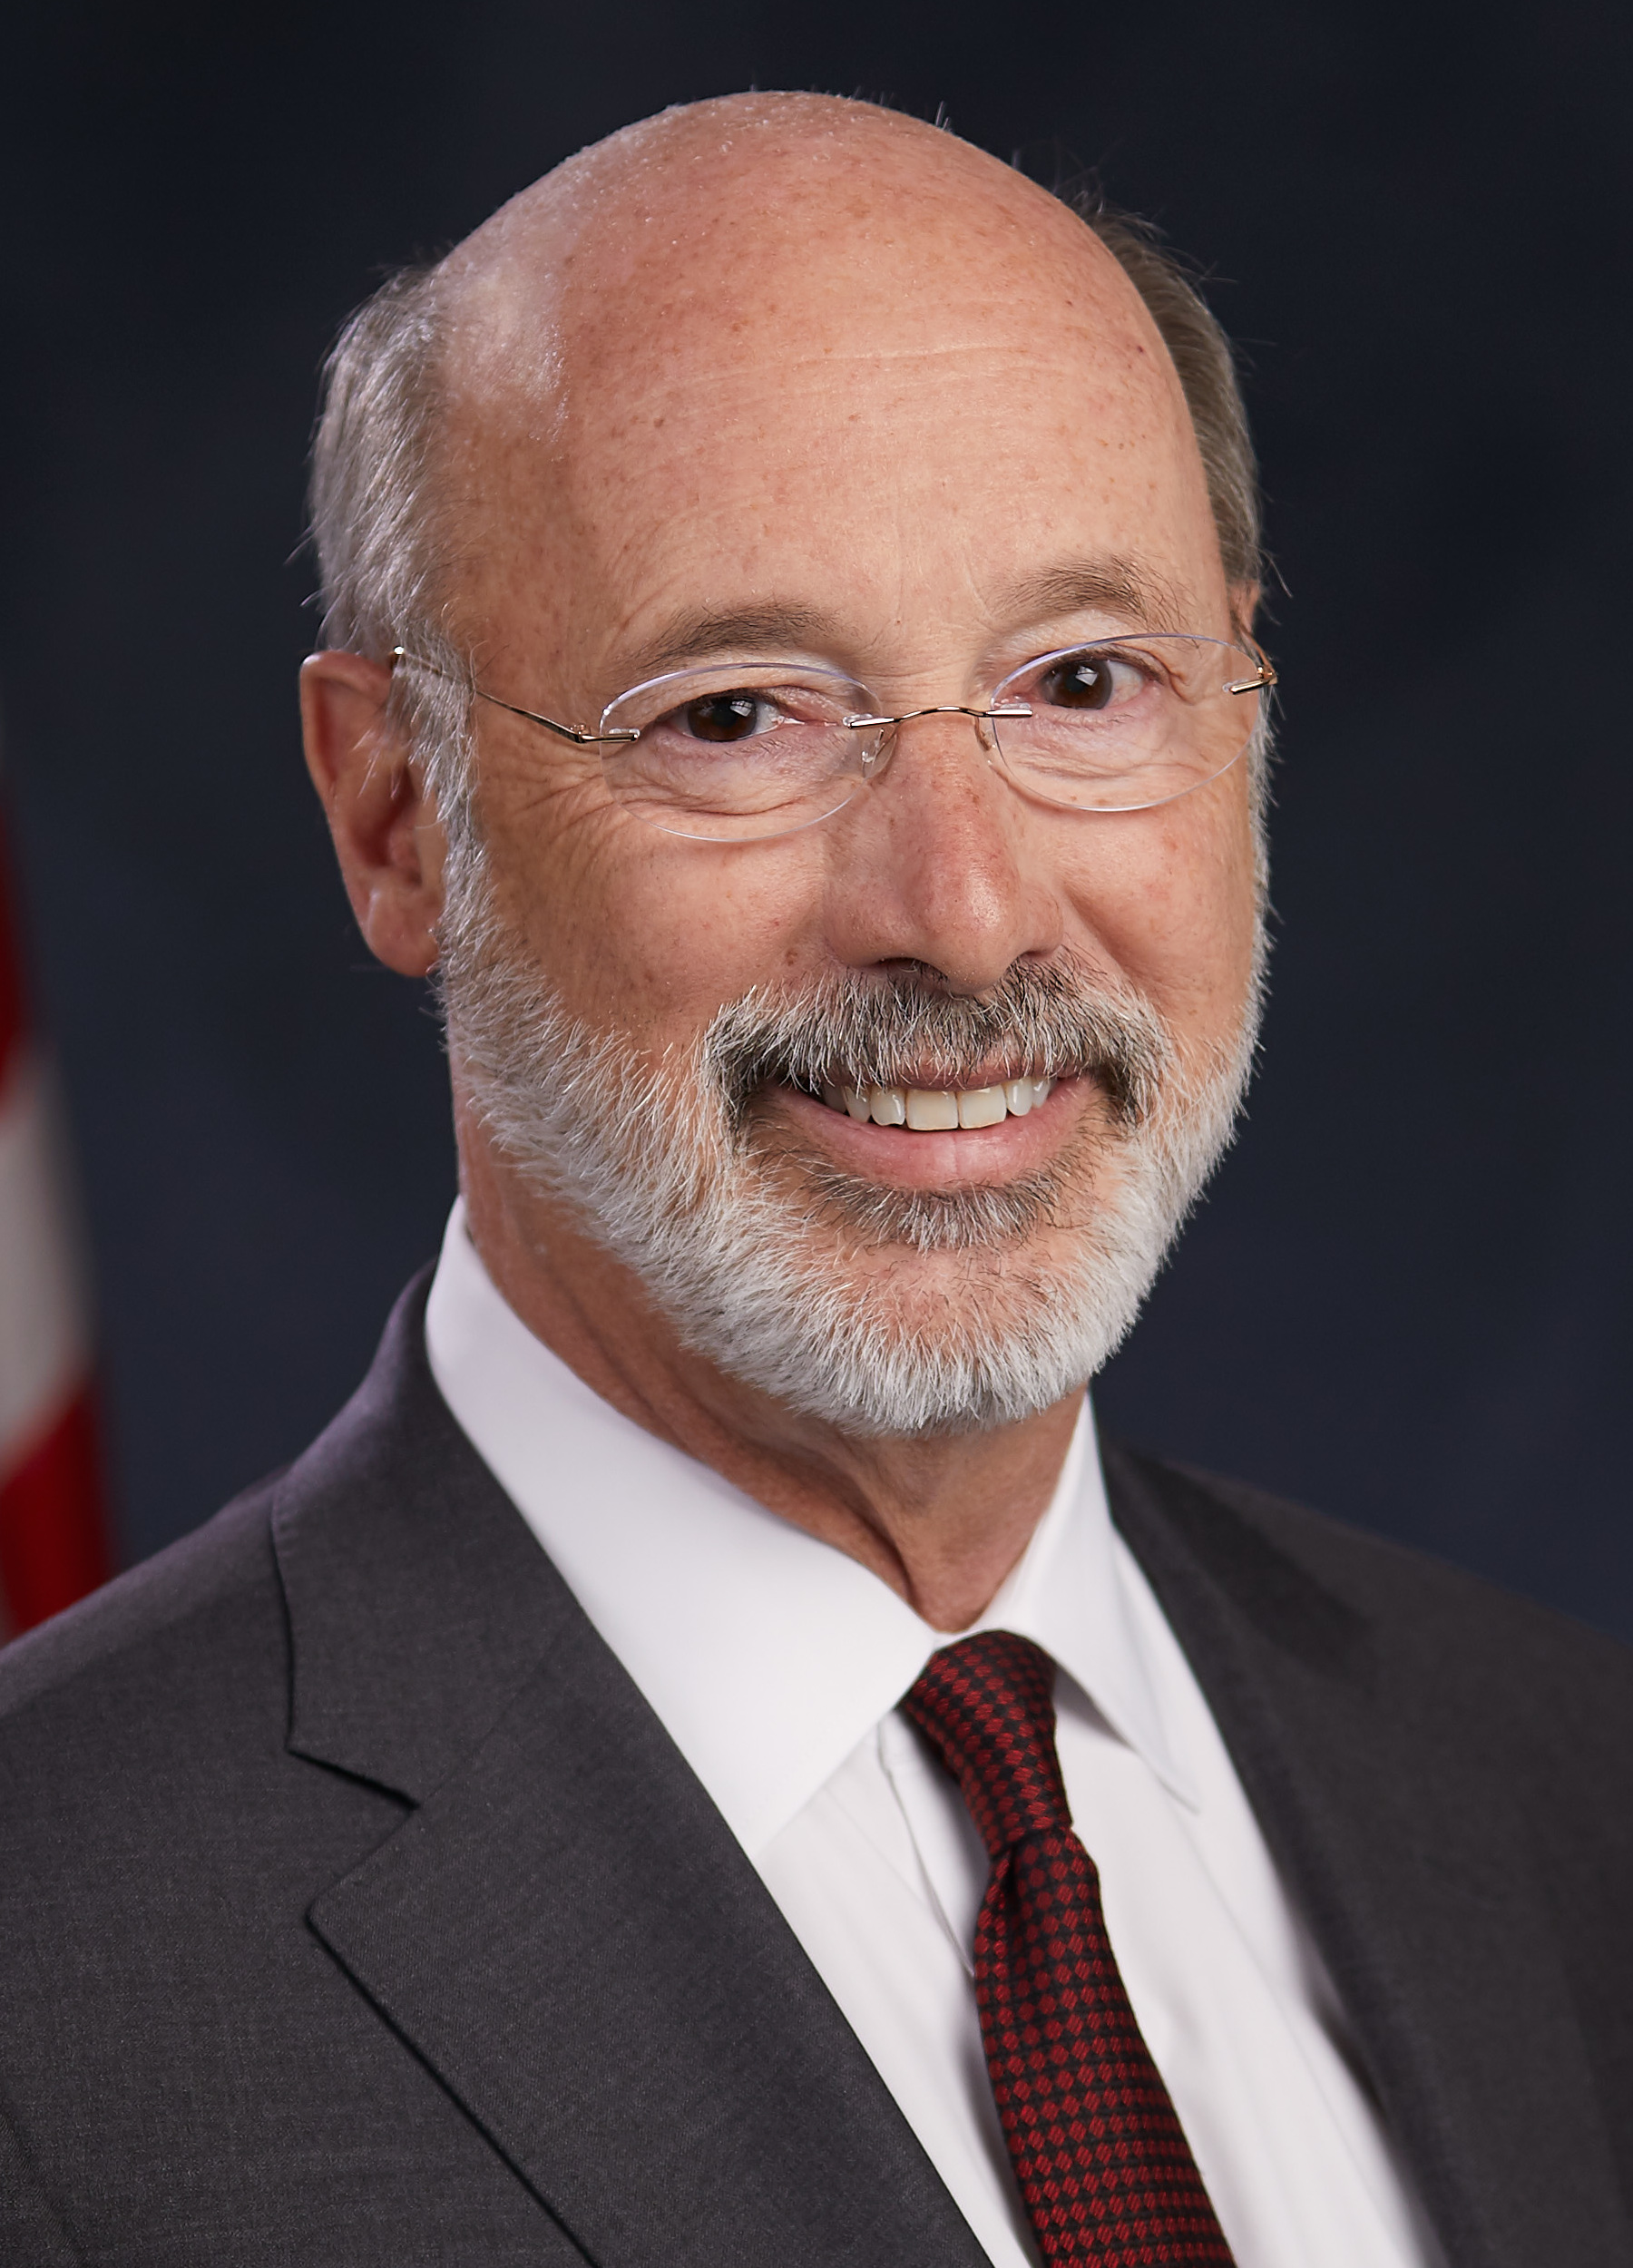 Tom Wolf (Pennsylvania kormányzója) Fizetés, nettó érték, Bio, Wiki, életkor, feleség, gyermekek, karrier, tények